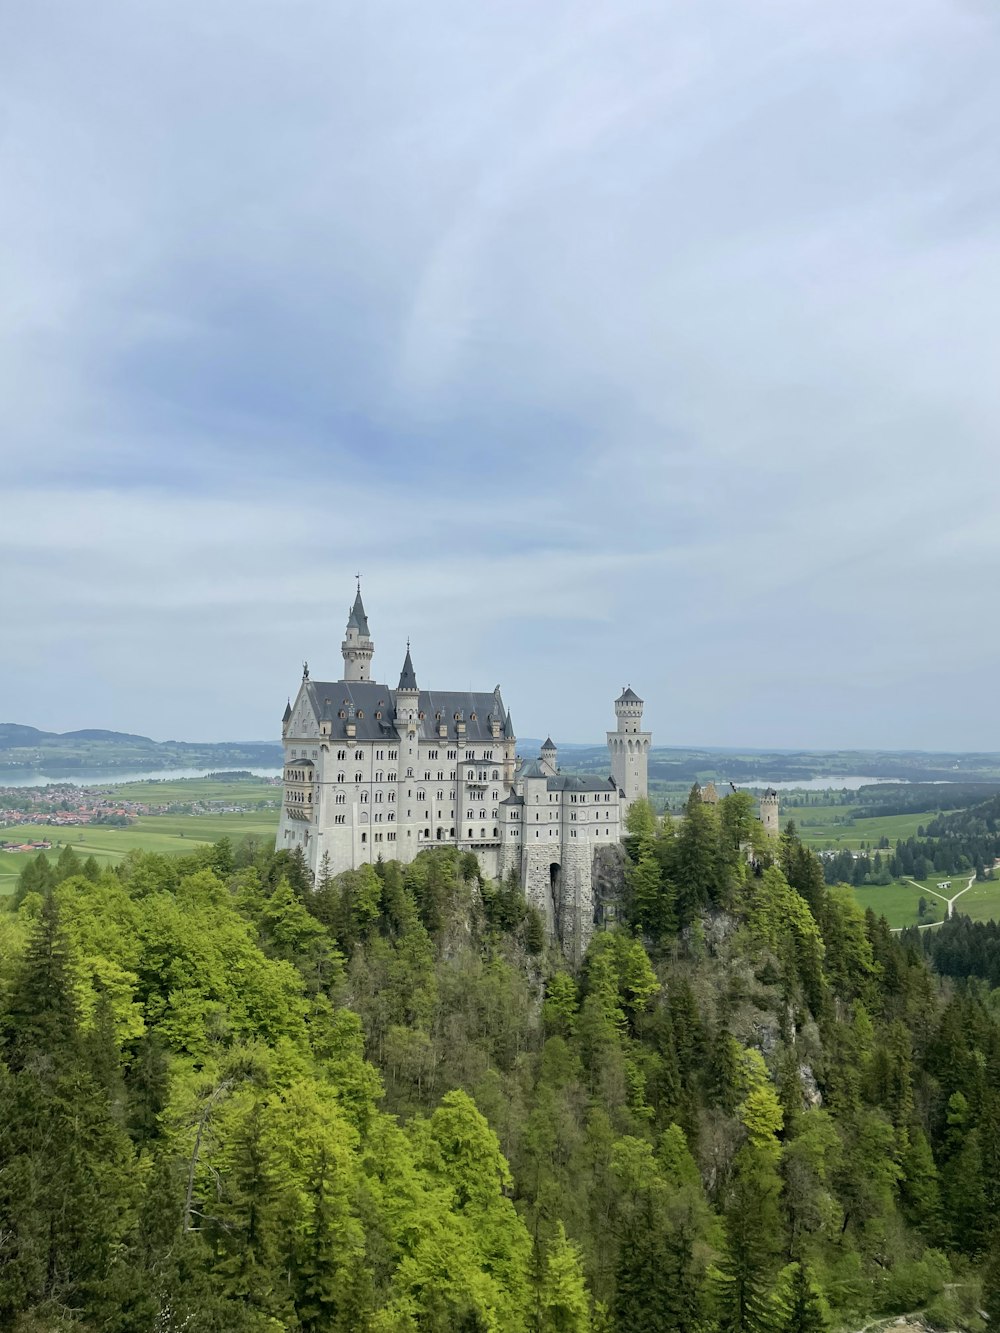 Un gran castillo situado en la cima de una exuberante ladera verde